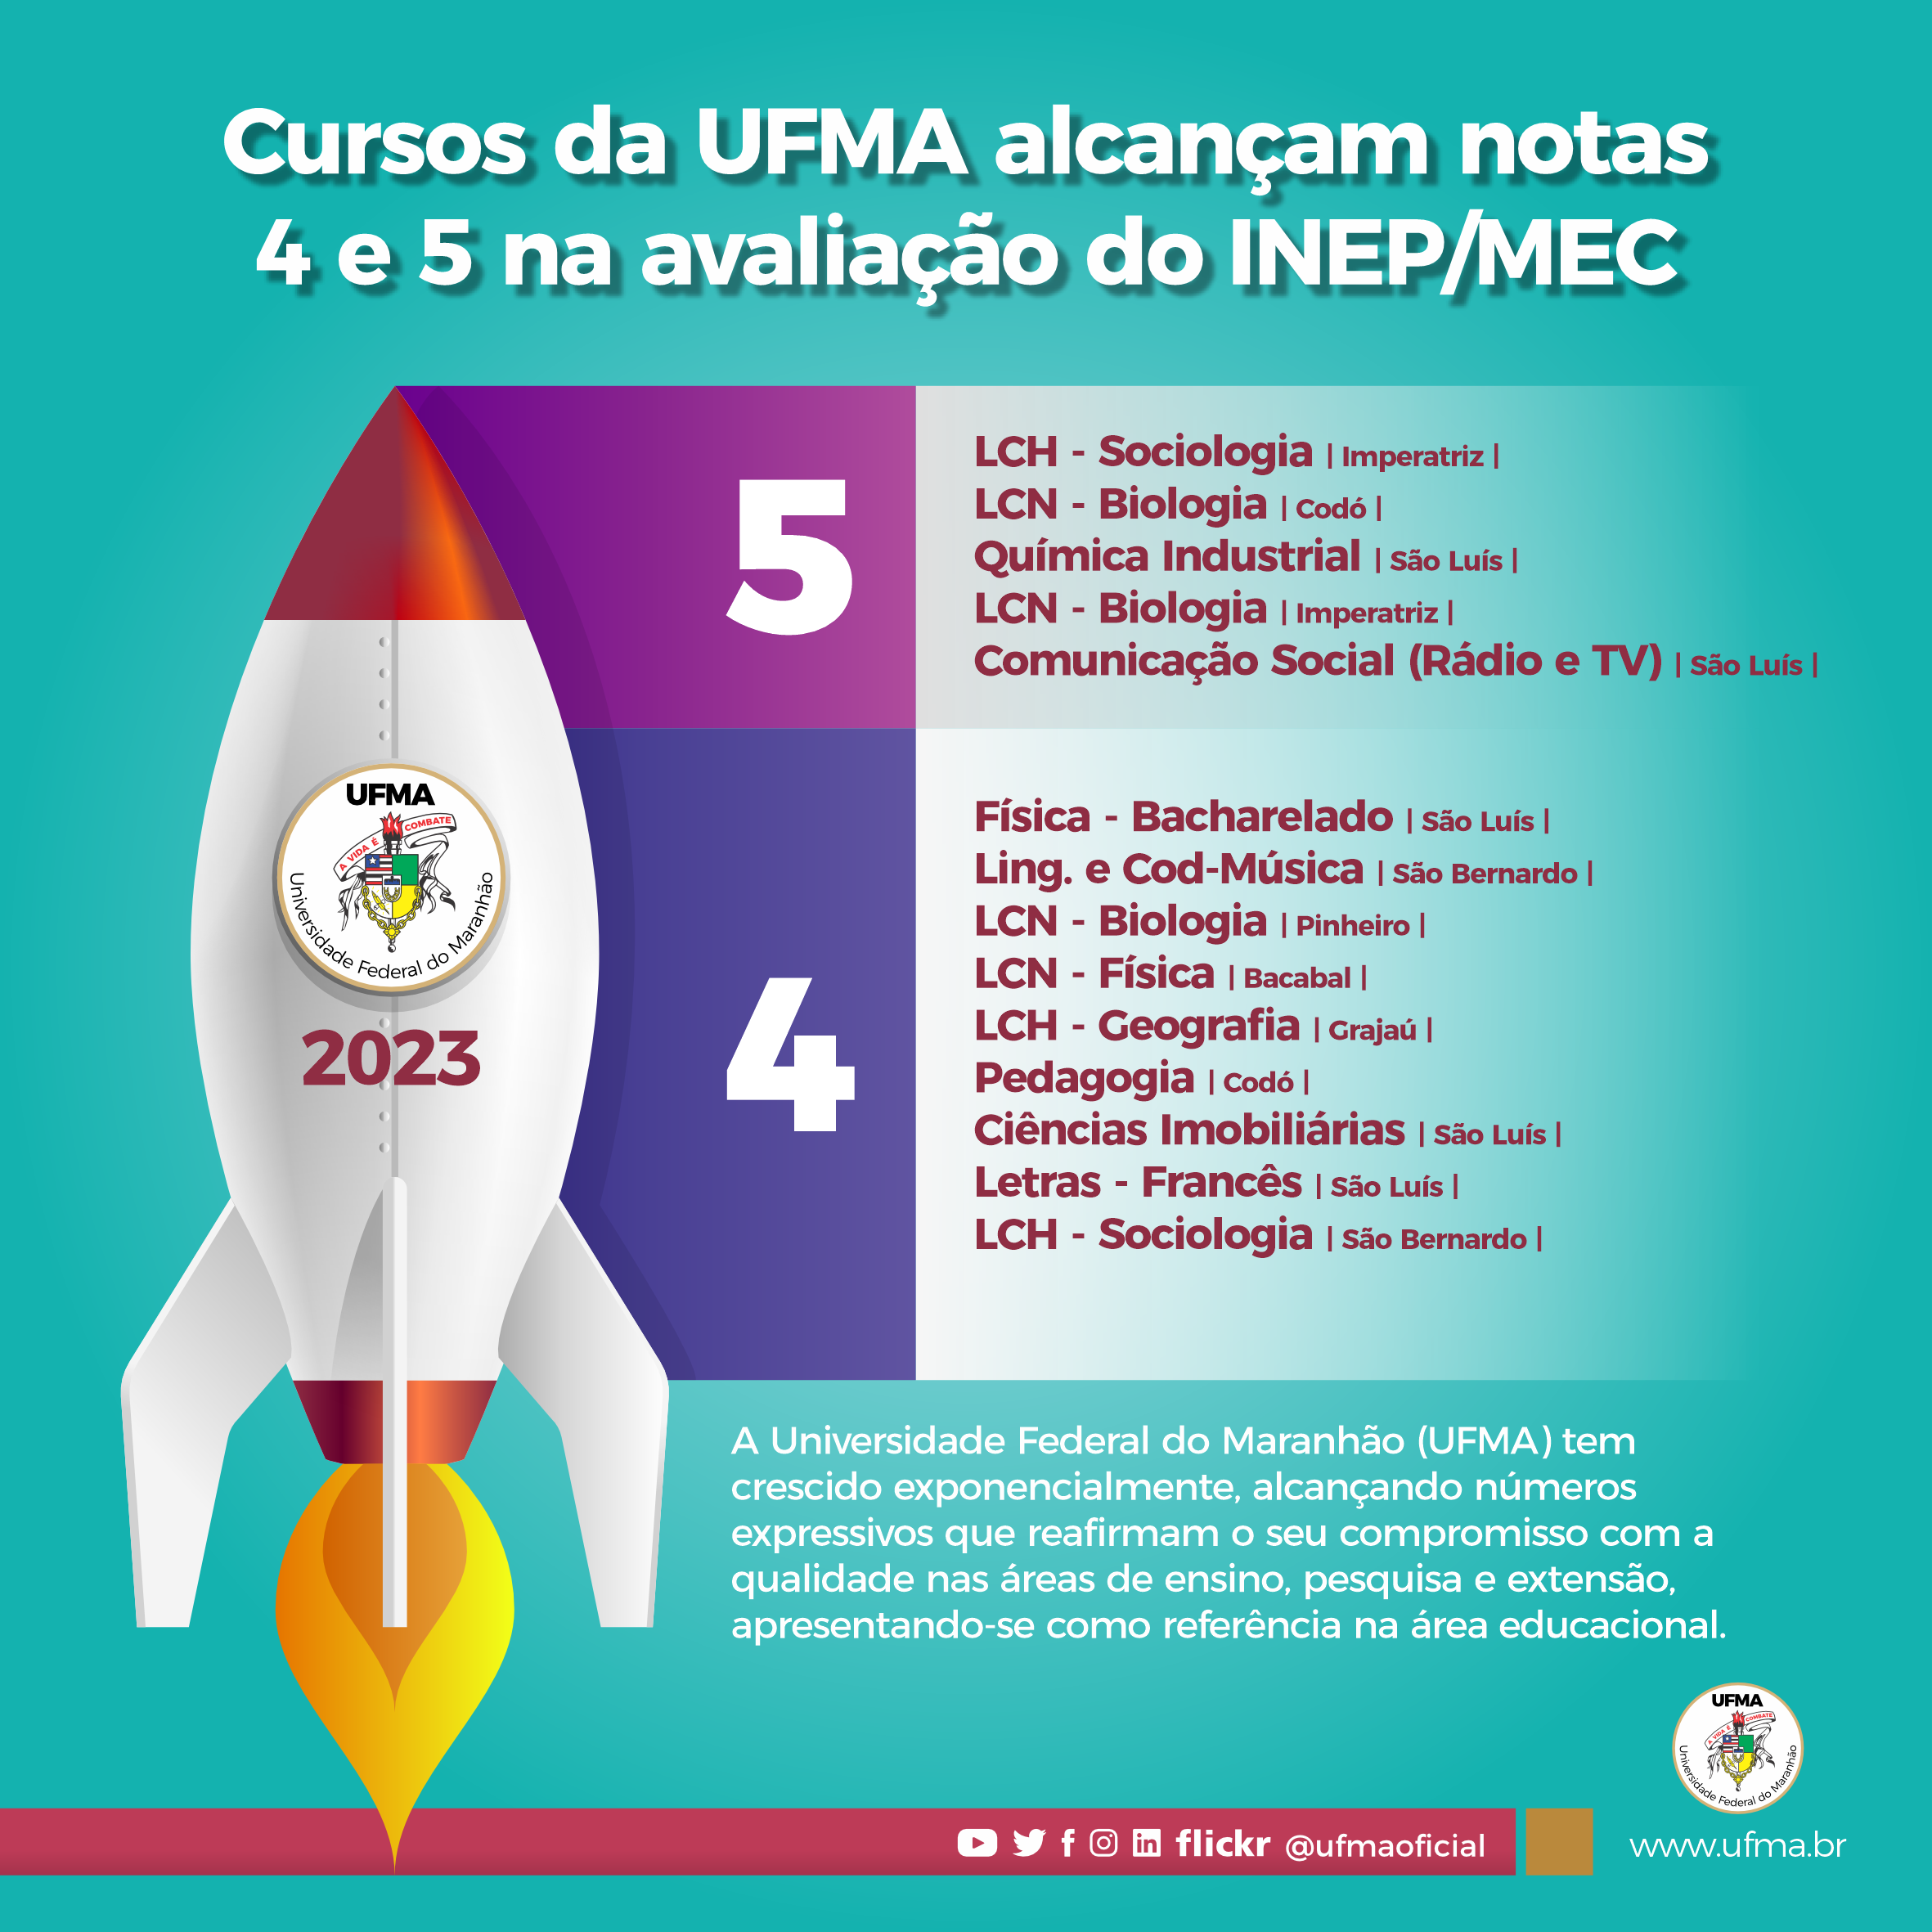 Crescimento na UFMA: cursos da instituição atingem notas 5 e 4 na avaliação do MEC